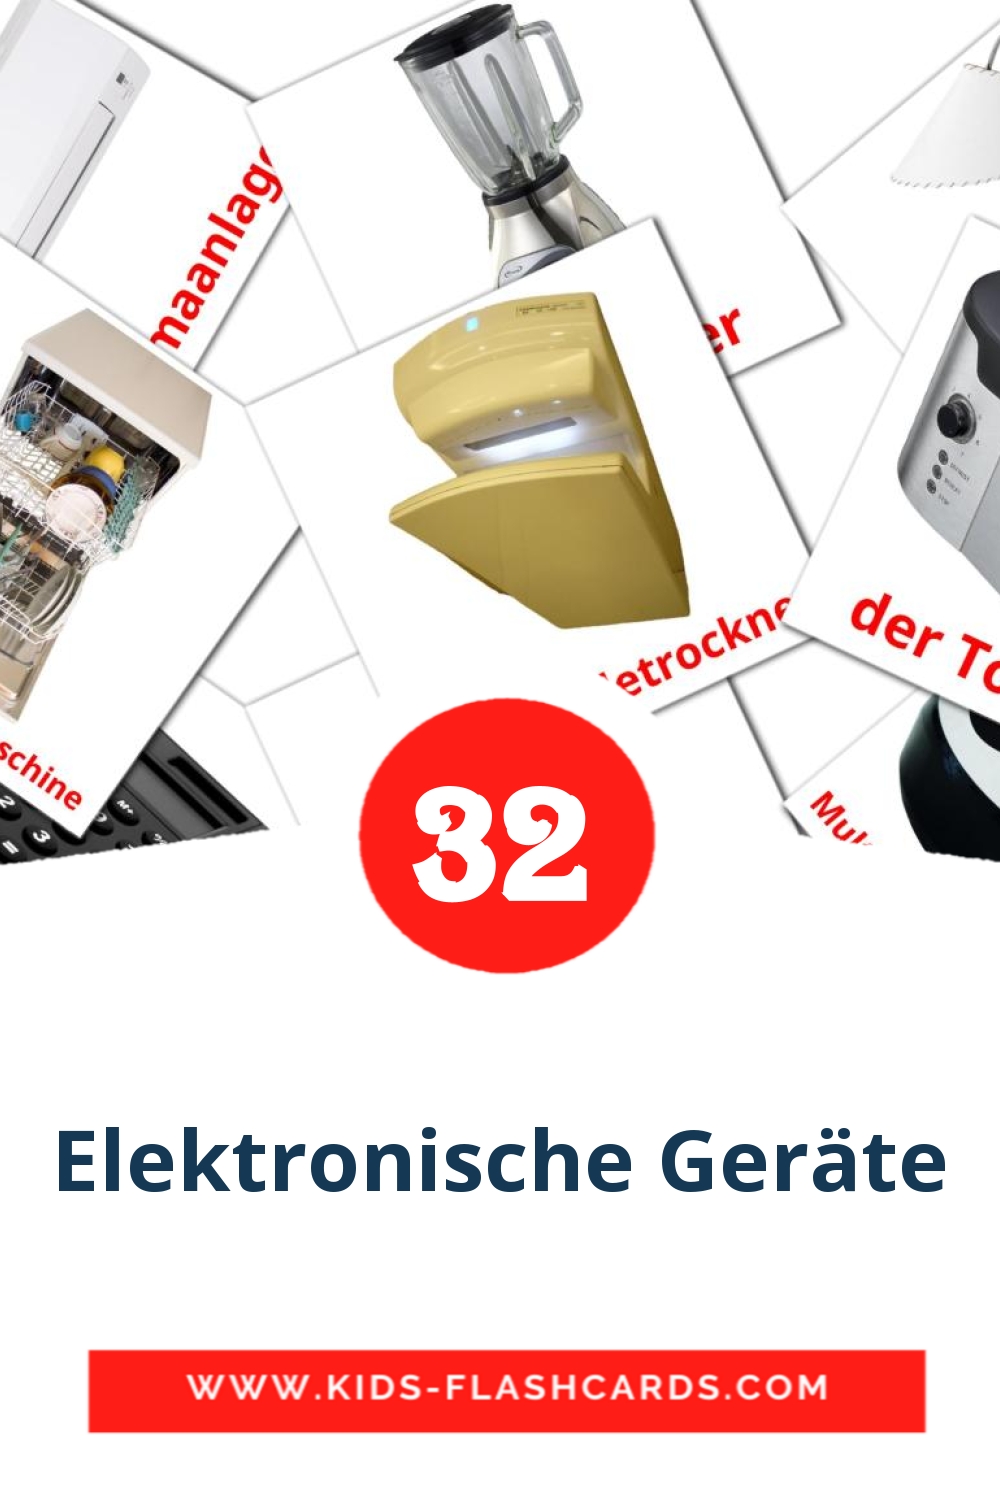 32 Elektronische Geräte Picture Cards for Kindergarden in german